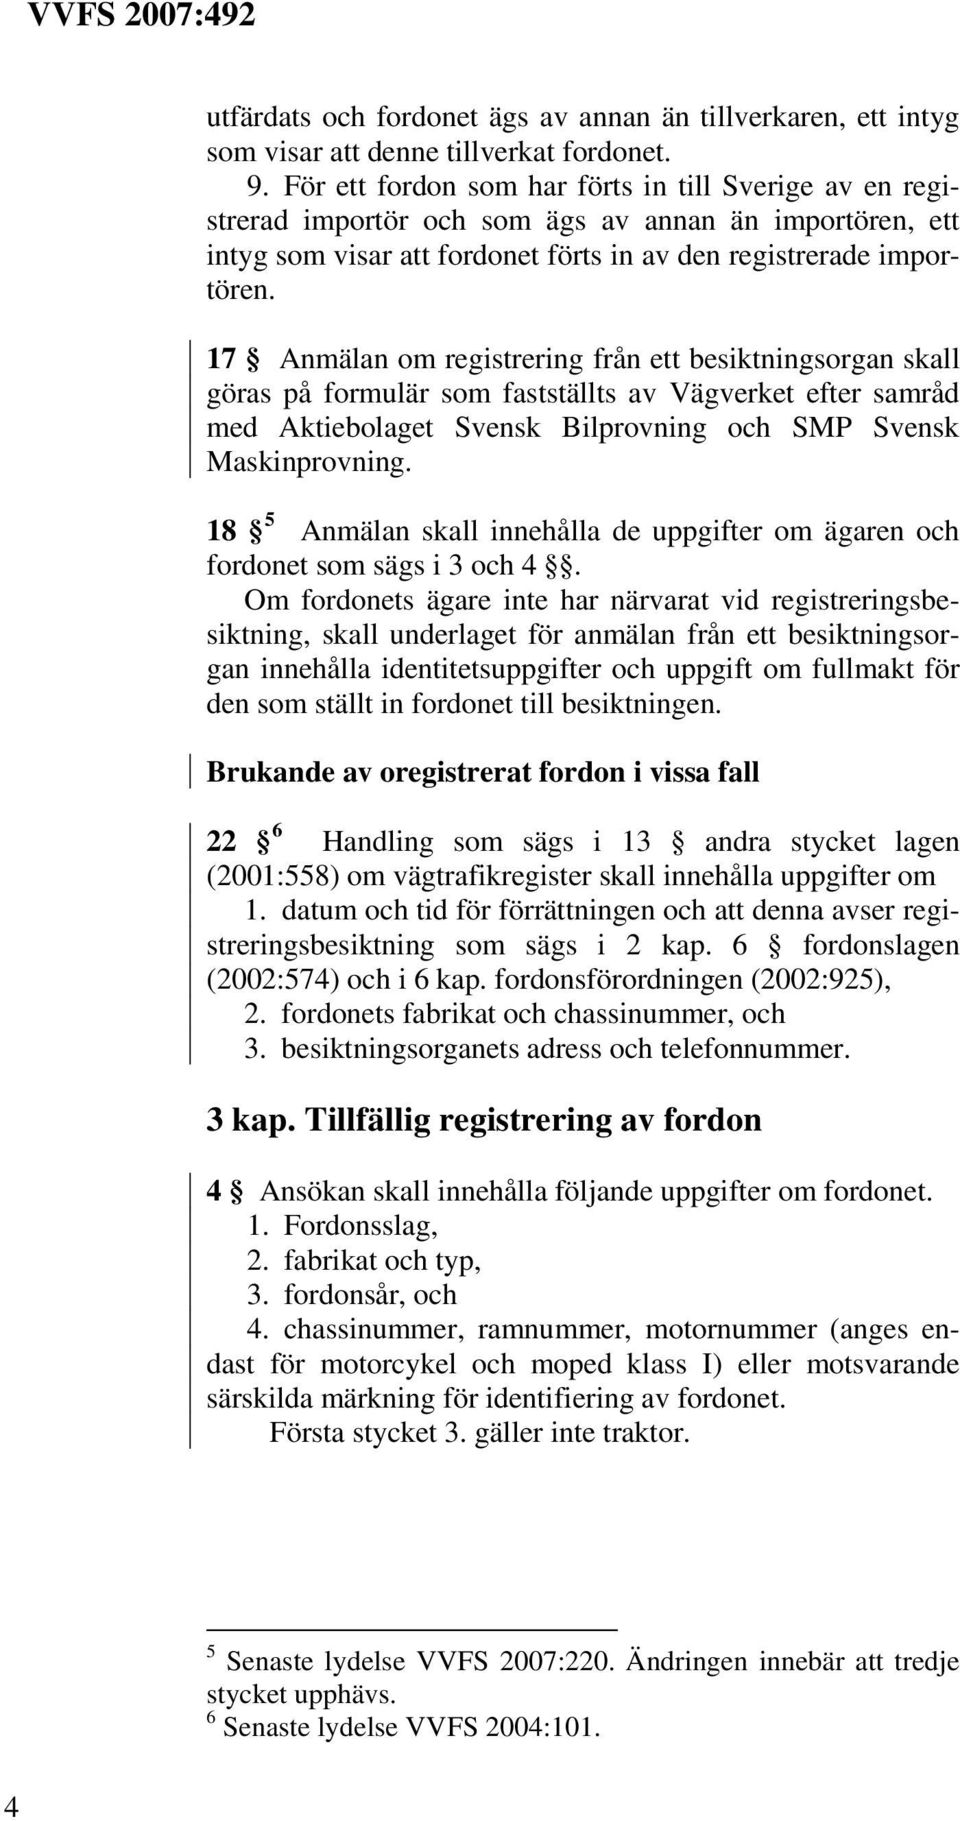 17 Anmälan om registrering från ett besiktningsorgan skall göras på formulär som fastställts av Vägverket efter samråd med Aktiebolaget Svensk Bilprovning och SMP Svensk Maskinprovning.